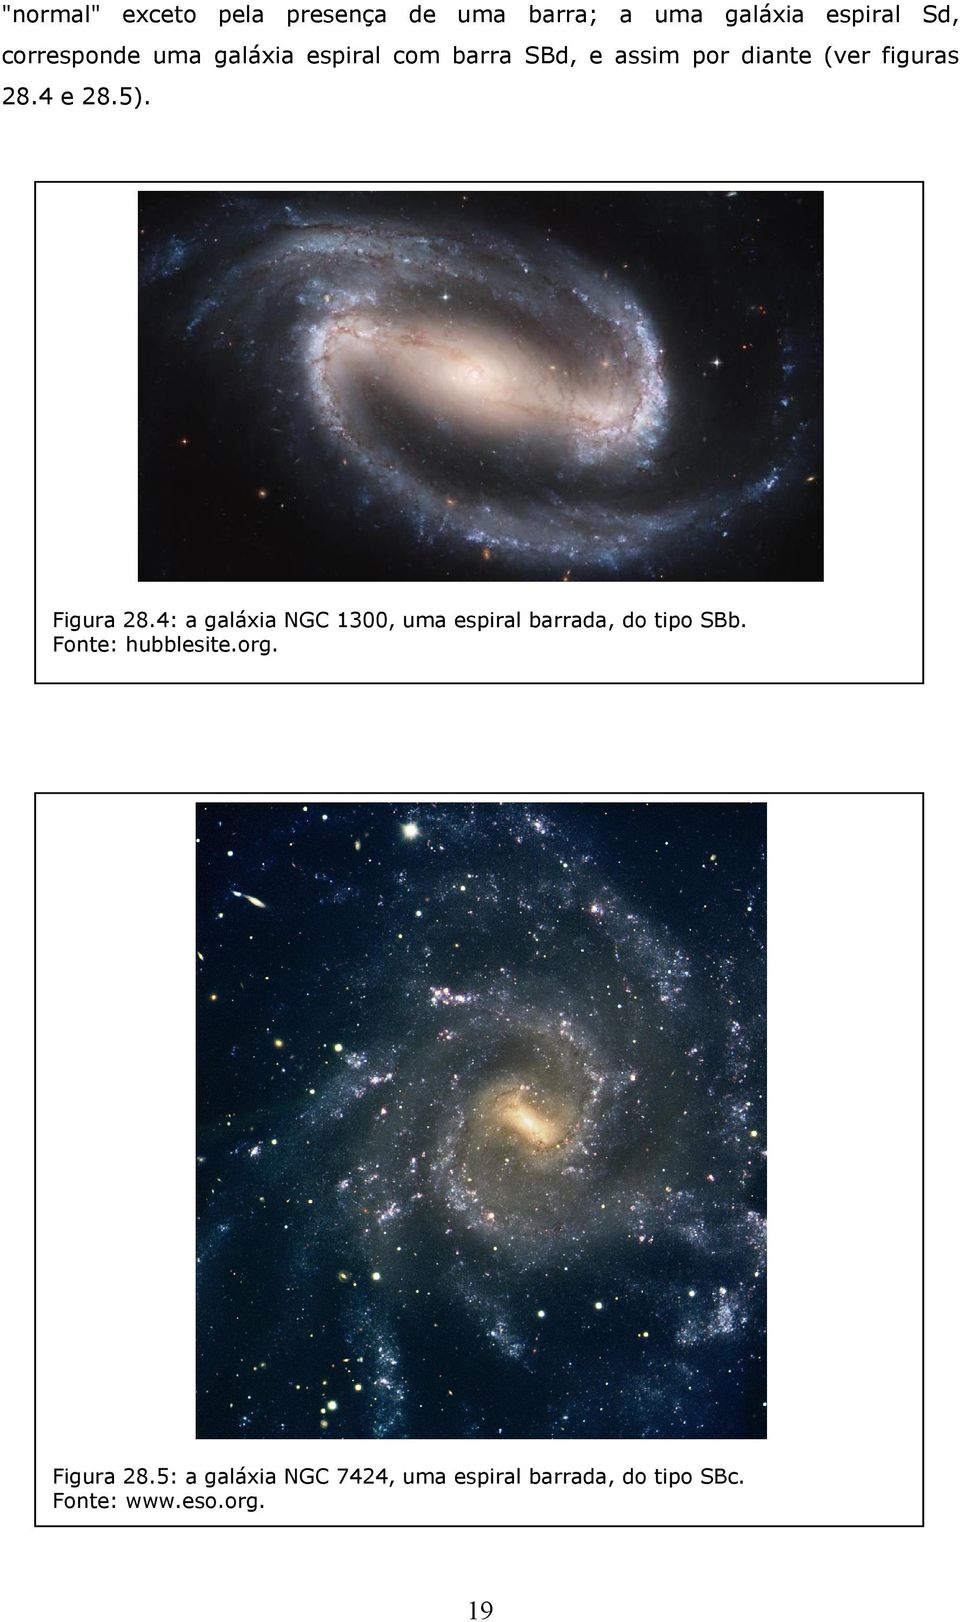 Figura 28.4: a galáxia NGC 1300, uma espiral barrada, do tipo SBb. Fonte: hubblesite.